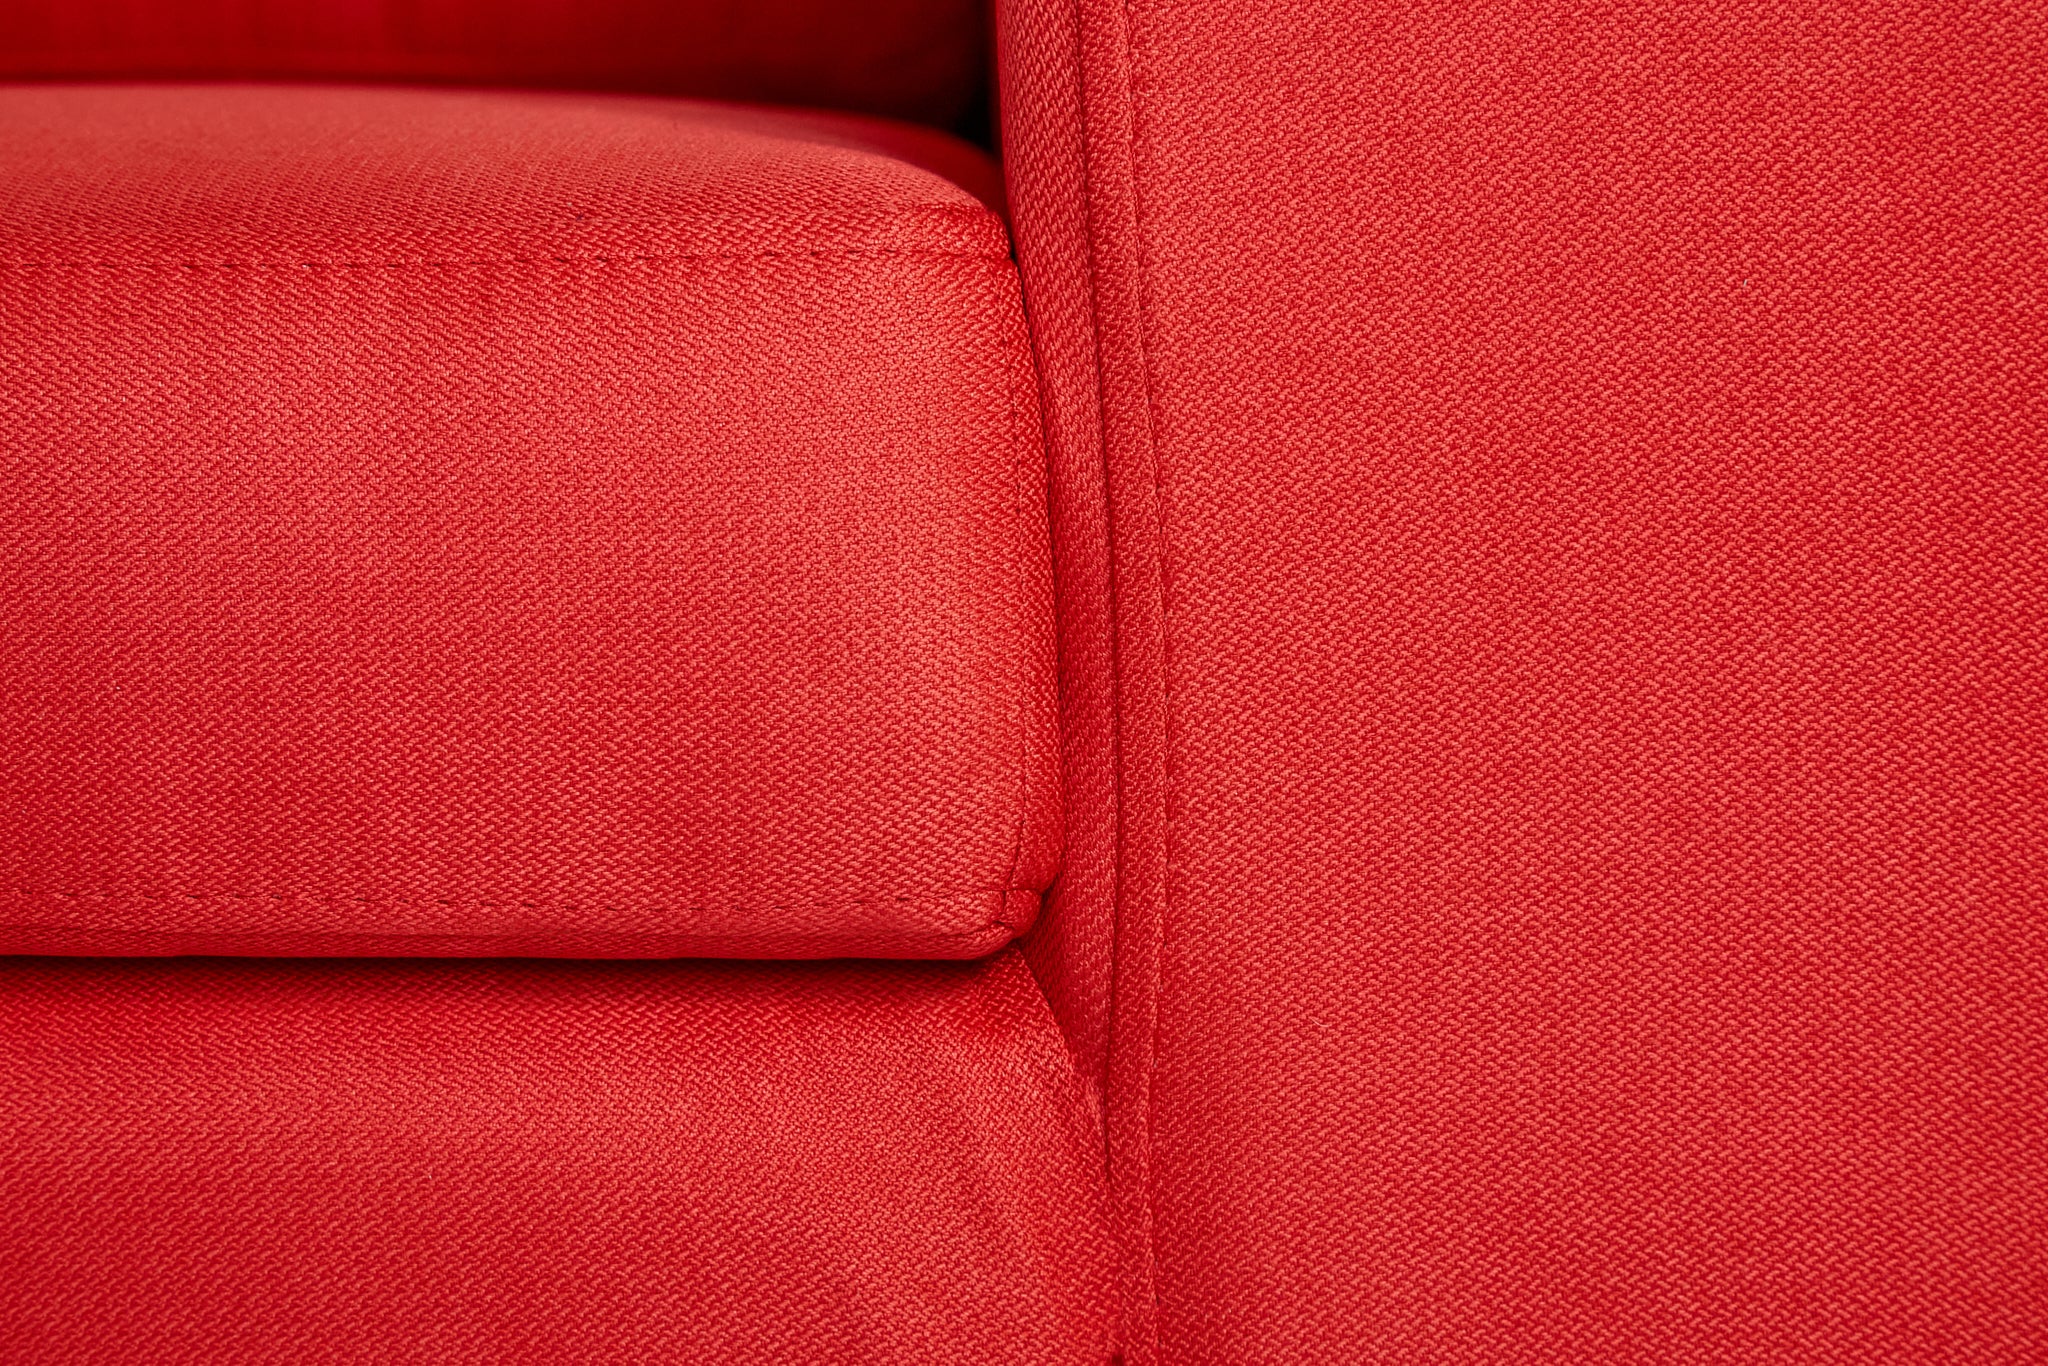 Sofá de 2 plazas Etna - Rojo con patas negras - Tugow